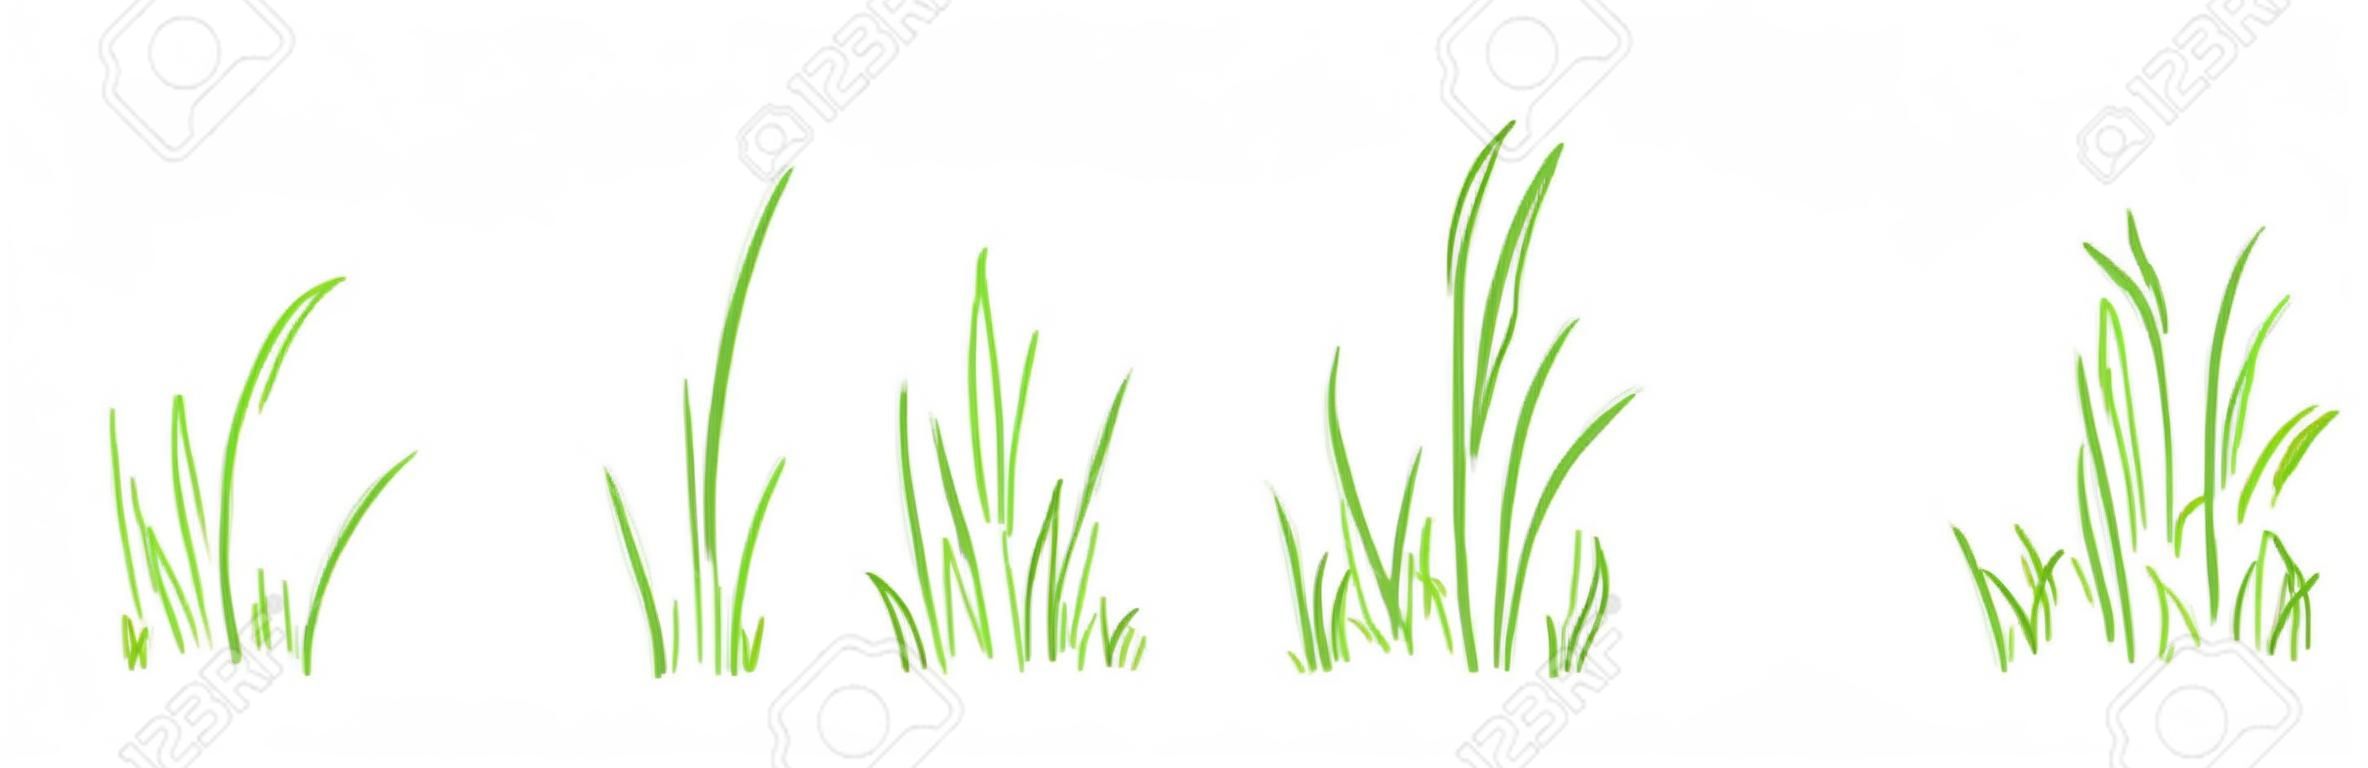 Trawa krzak linii wektor zestaw wyciągnąć rękę, elementy szkicu łąka i krajobraz, trawnik bazgroły, projekt zarys zielonej granicy na białym tle. ilustracja natura